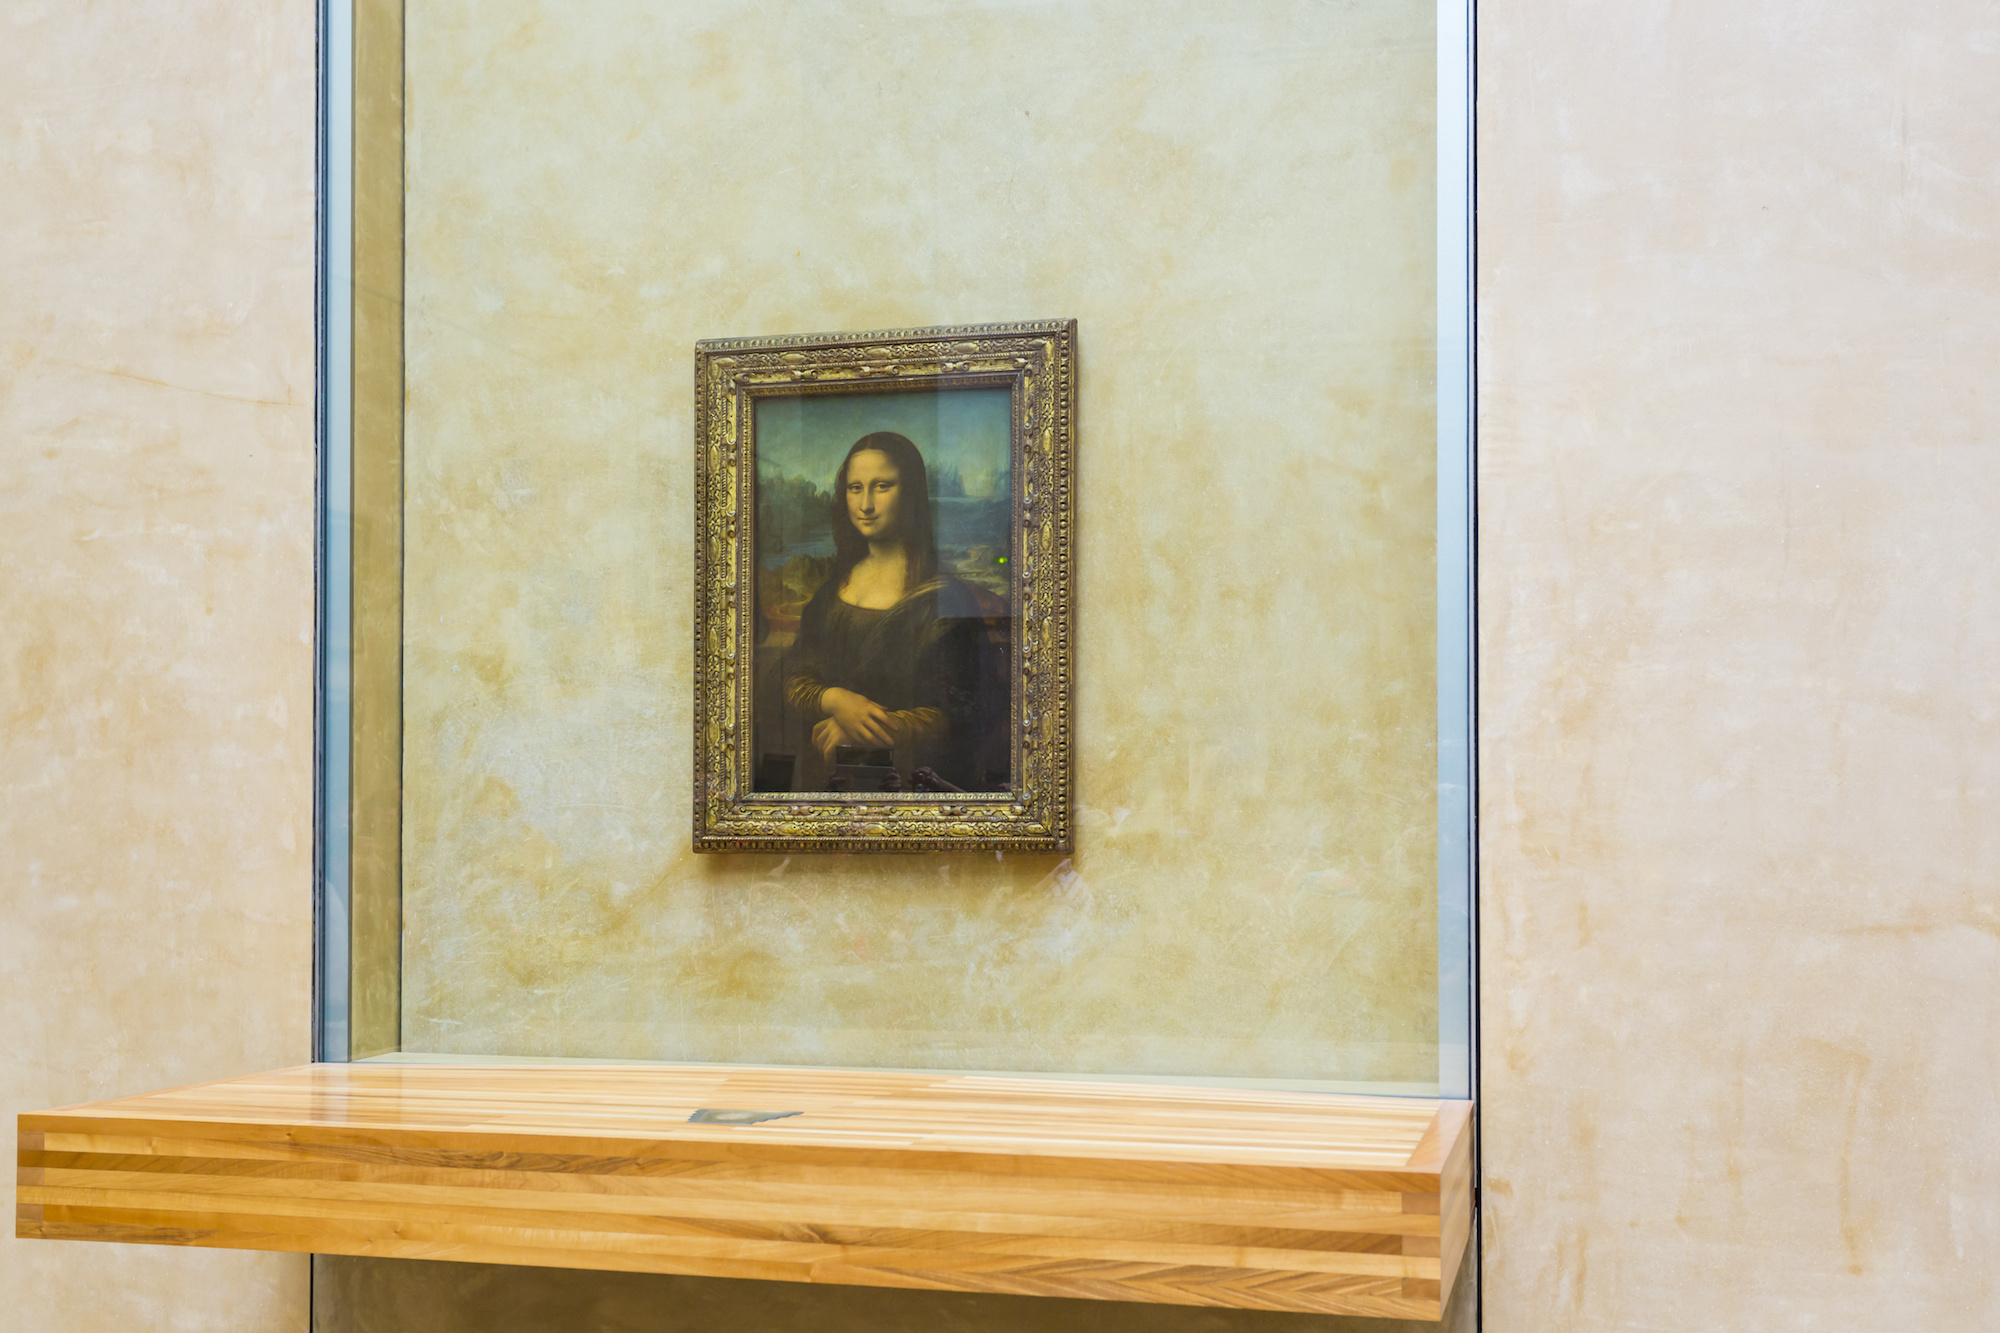 Mona Lisa verwachting